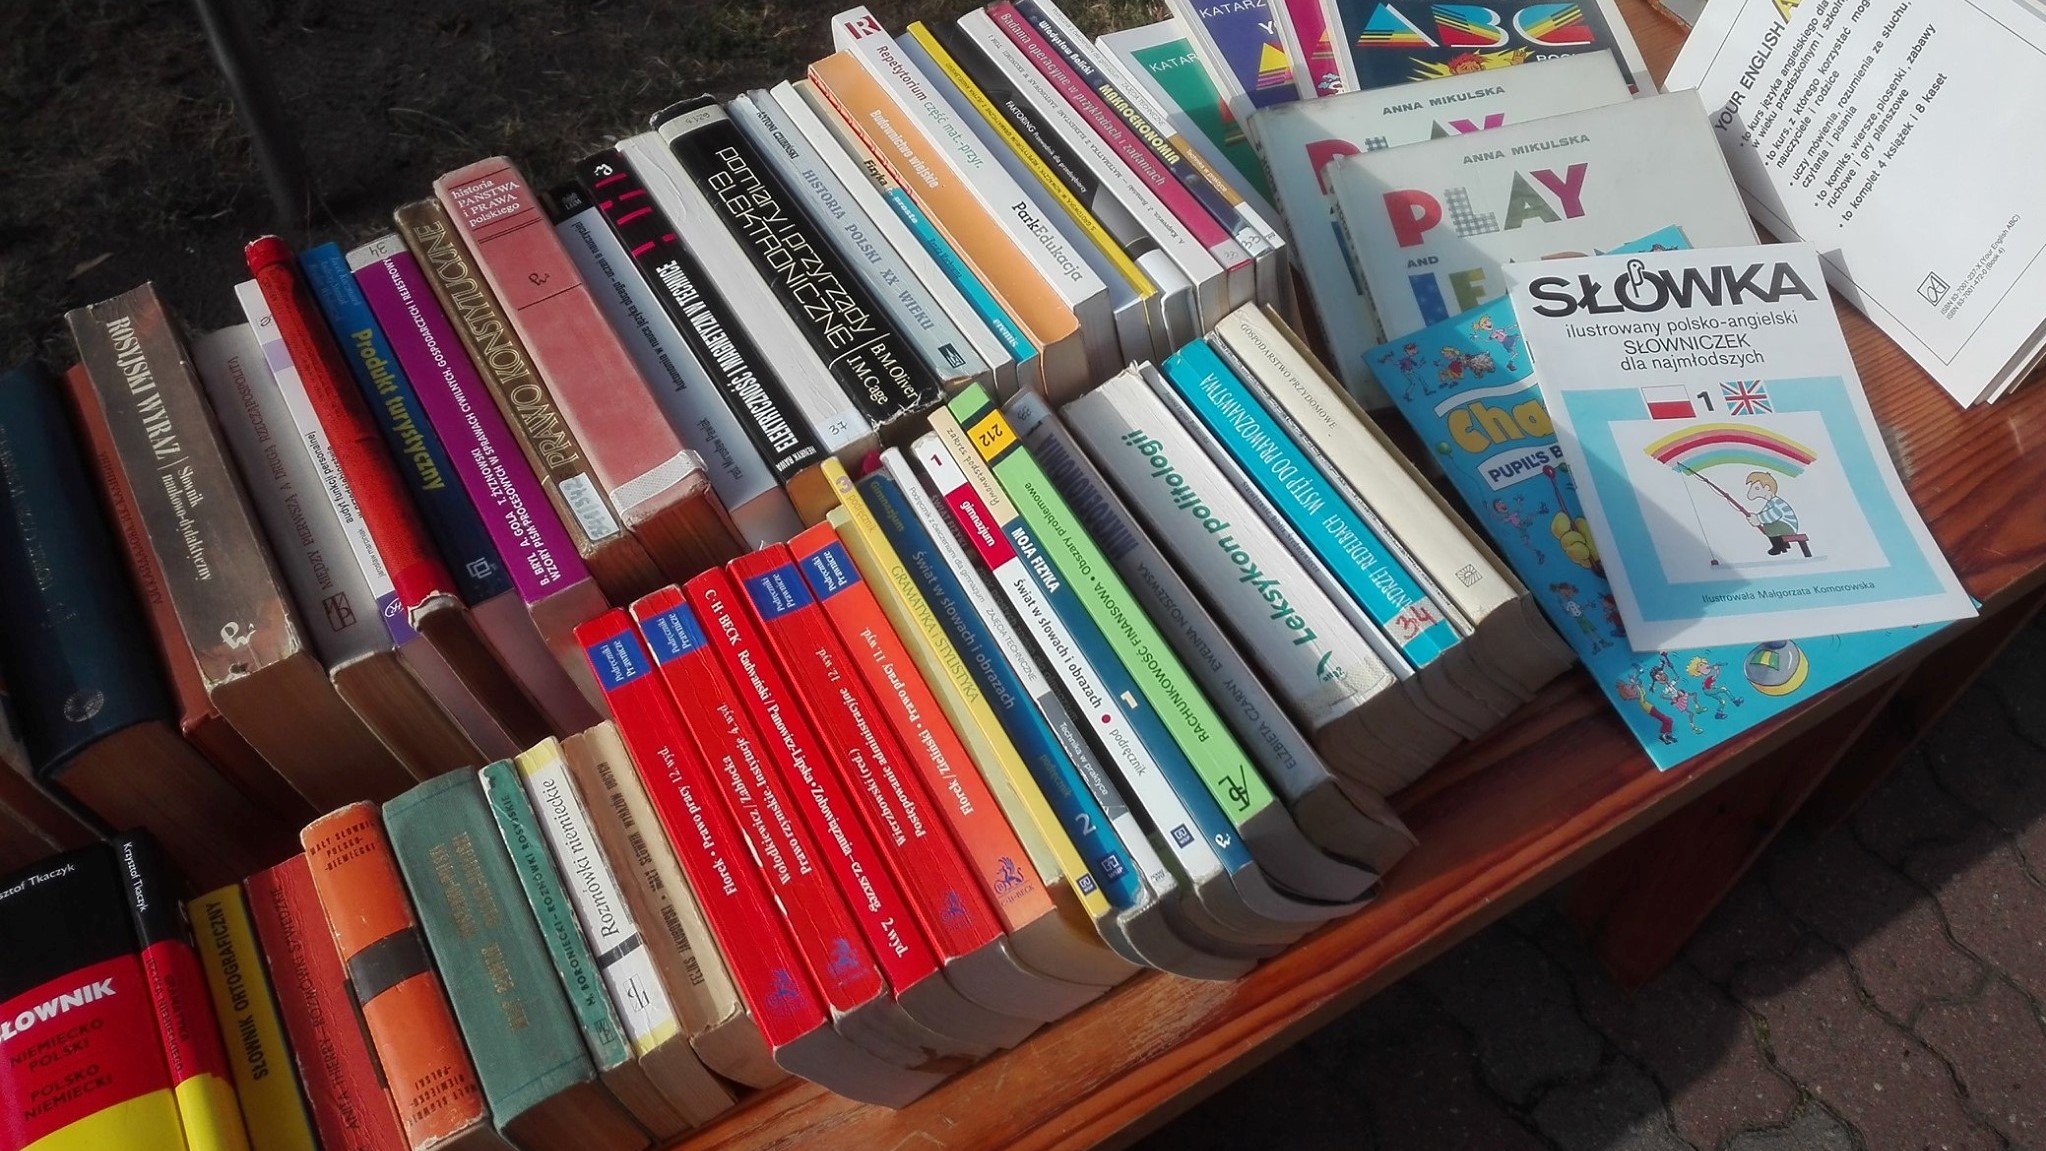 biblioteka miejska w koninie sprzedaje książki - FB:  Miejska Biblioteka Publiczna w Koninie